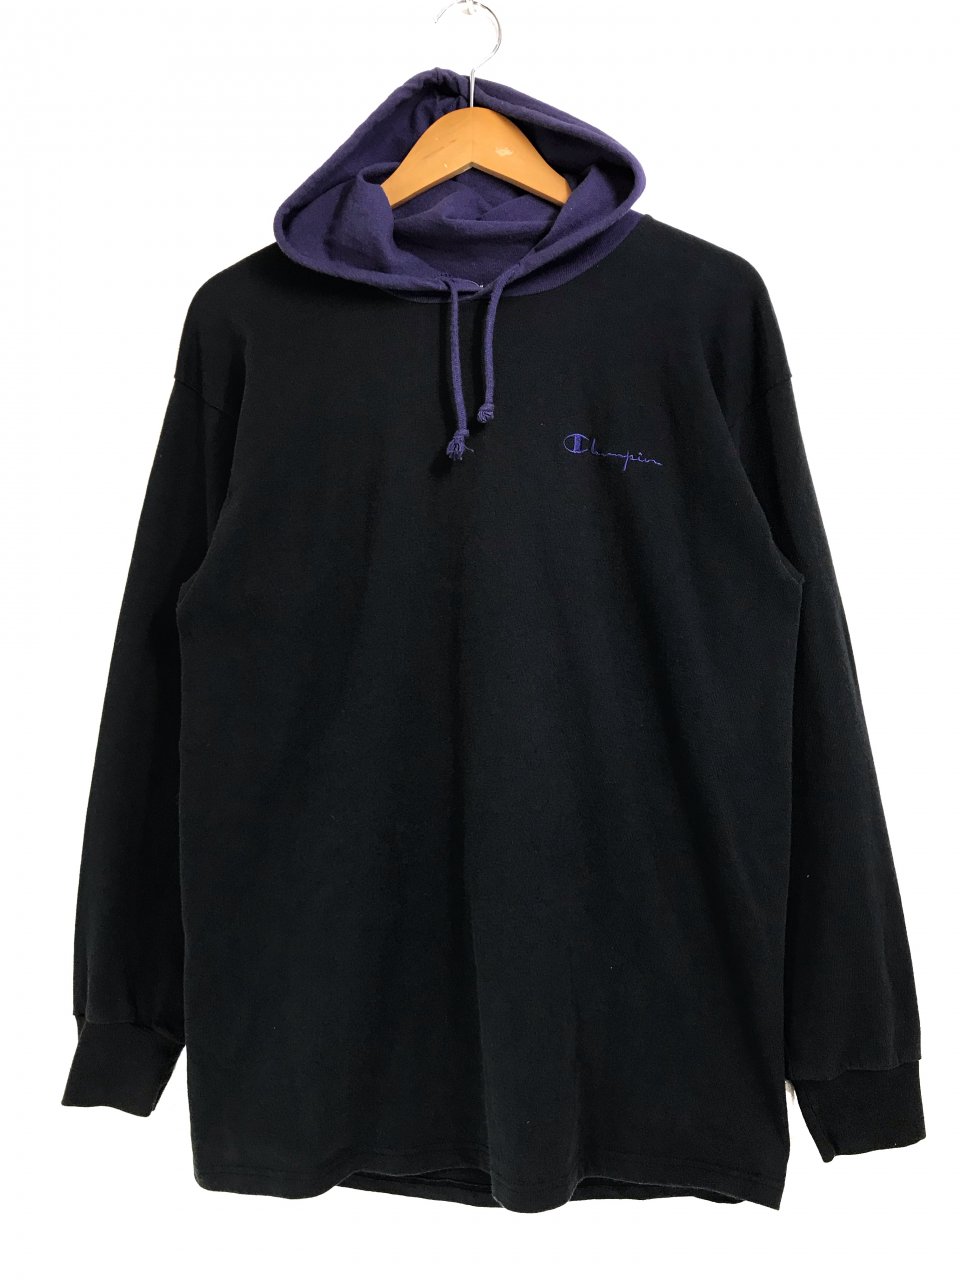 USA製 90s Champion Cotton Hooded L/S Tee 黒紫 L チャンピオン フード付き 長袖 Tシャツ フードロン